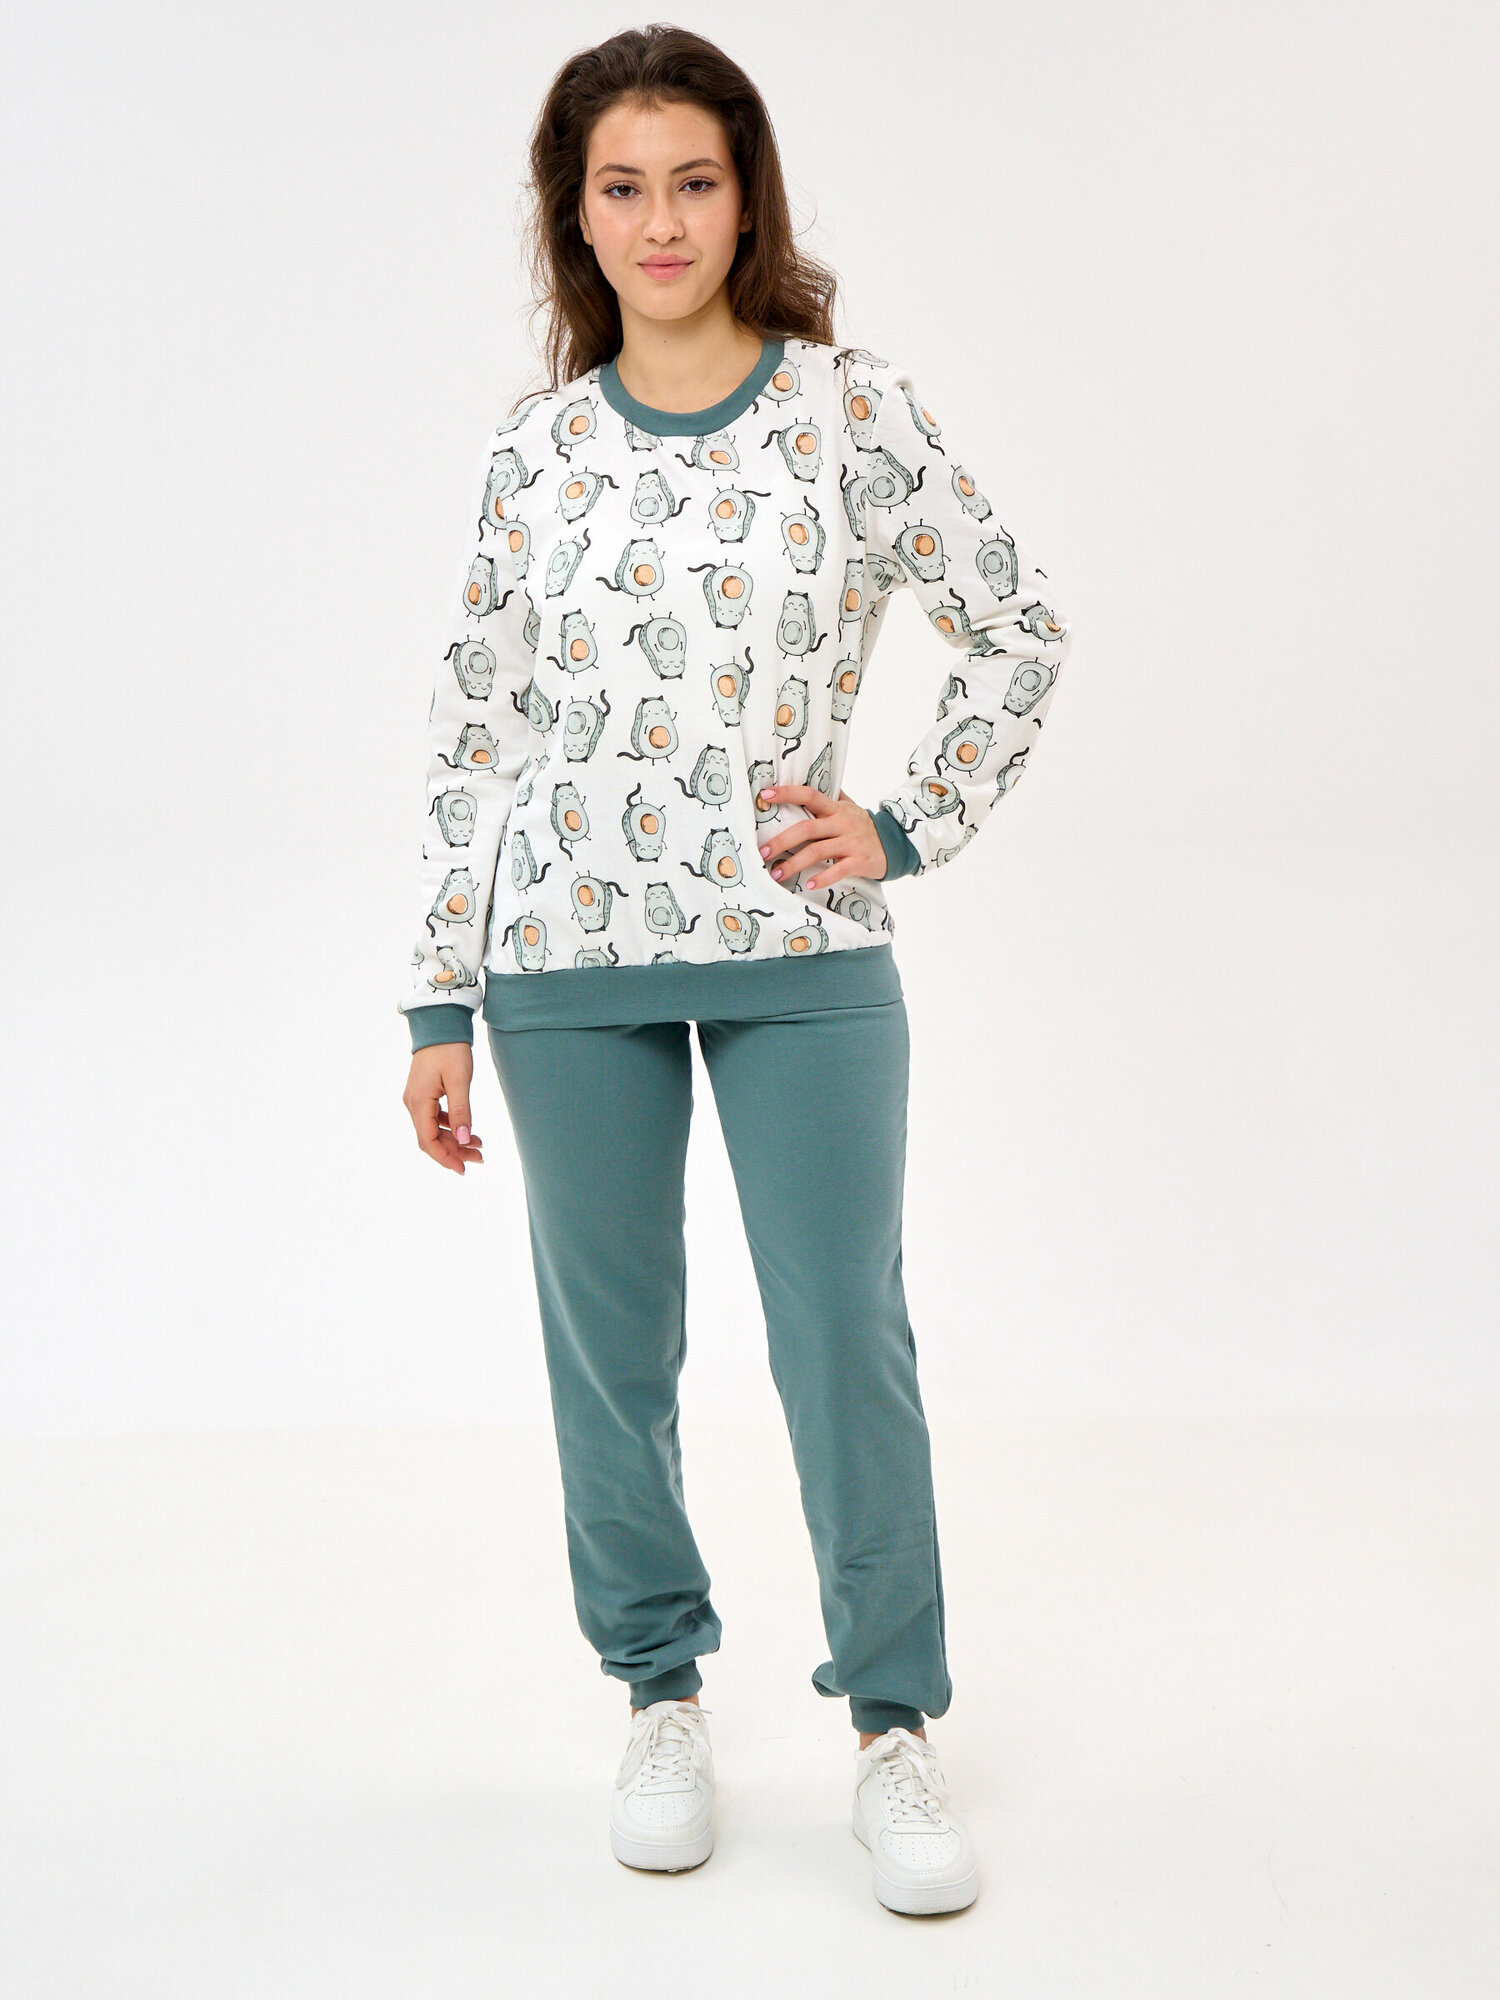 Пижама Монотекс, размер 52, белый, зеленый - фотография № 1